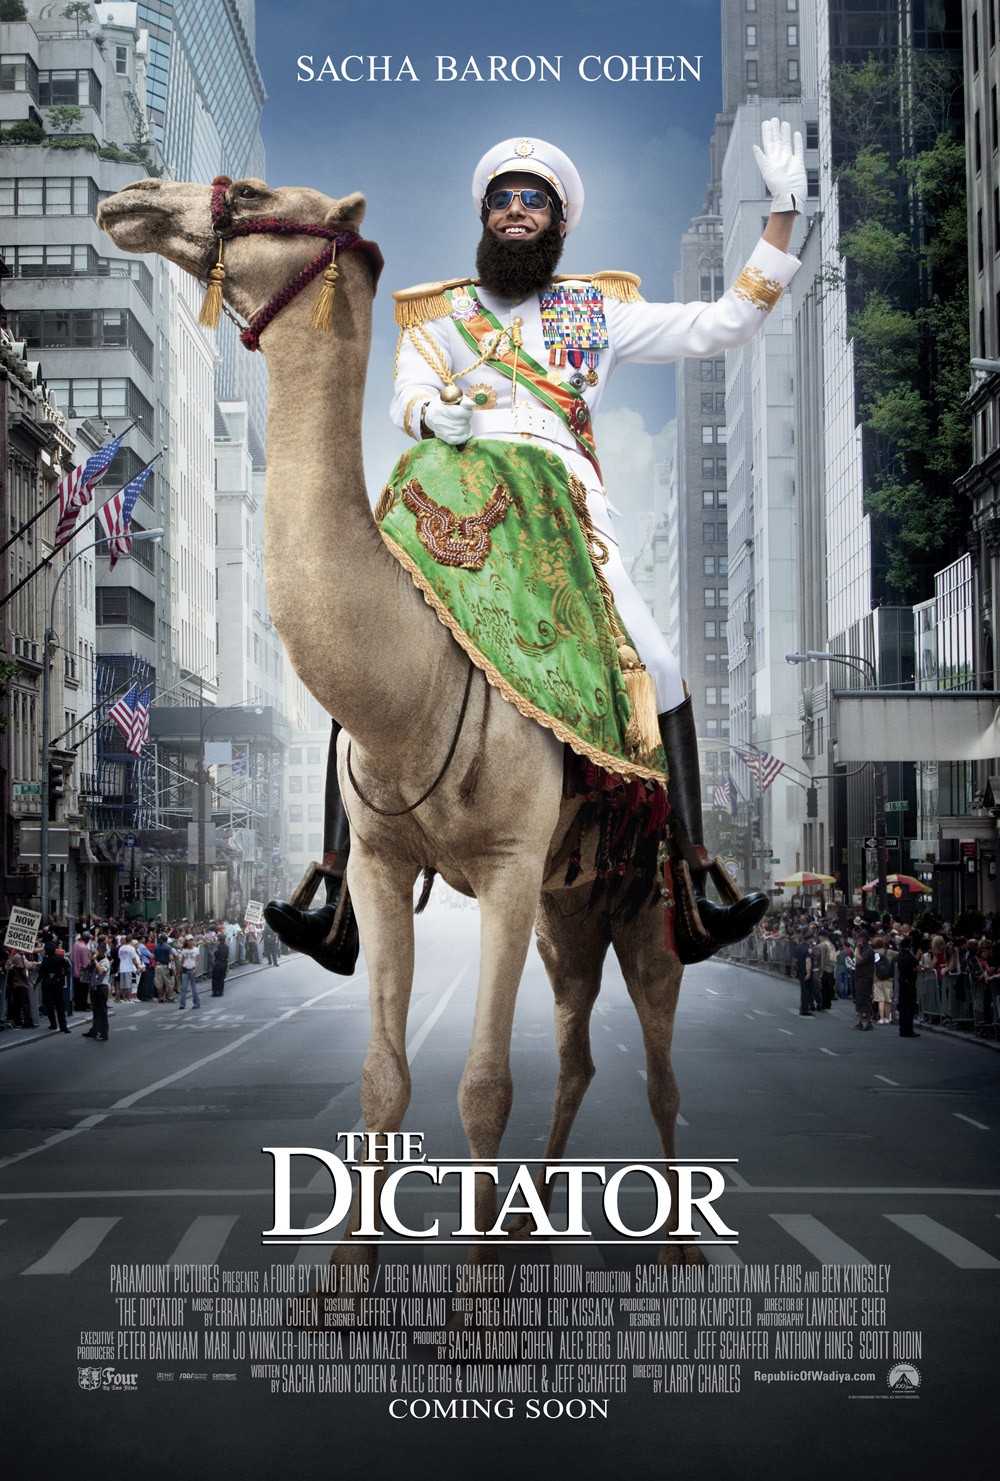 The dictator full movie stream